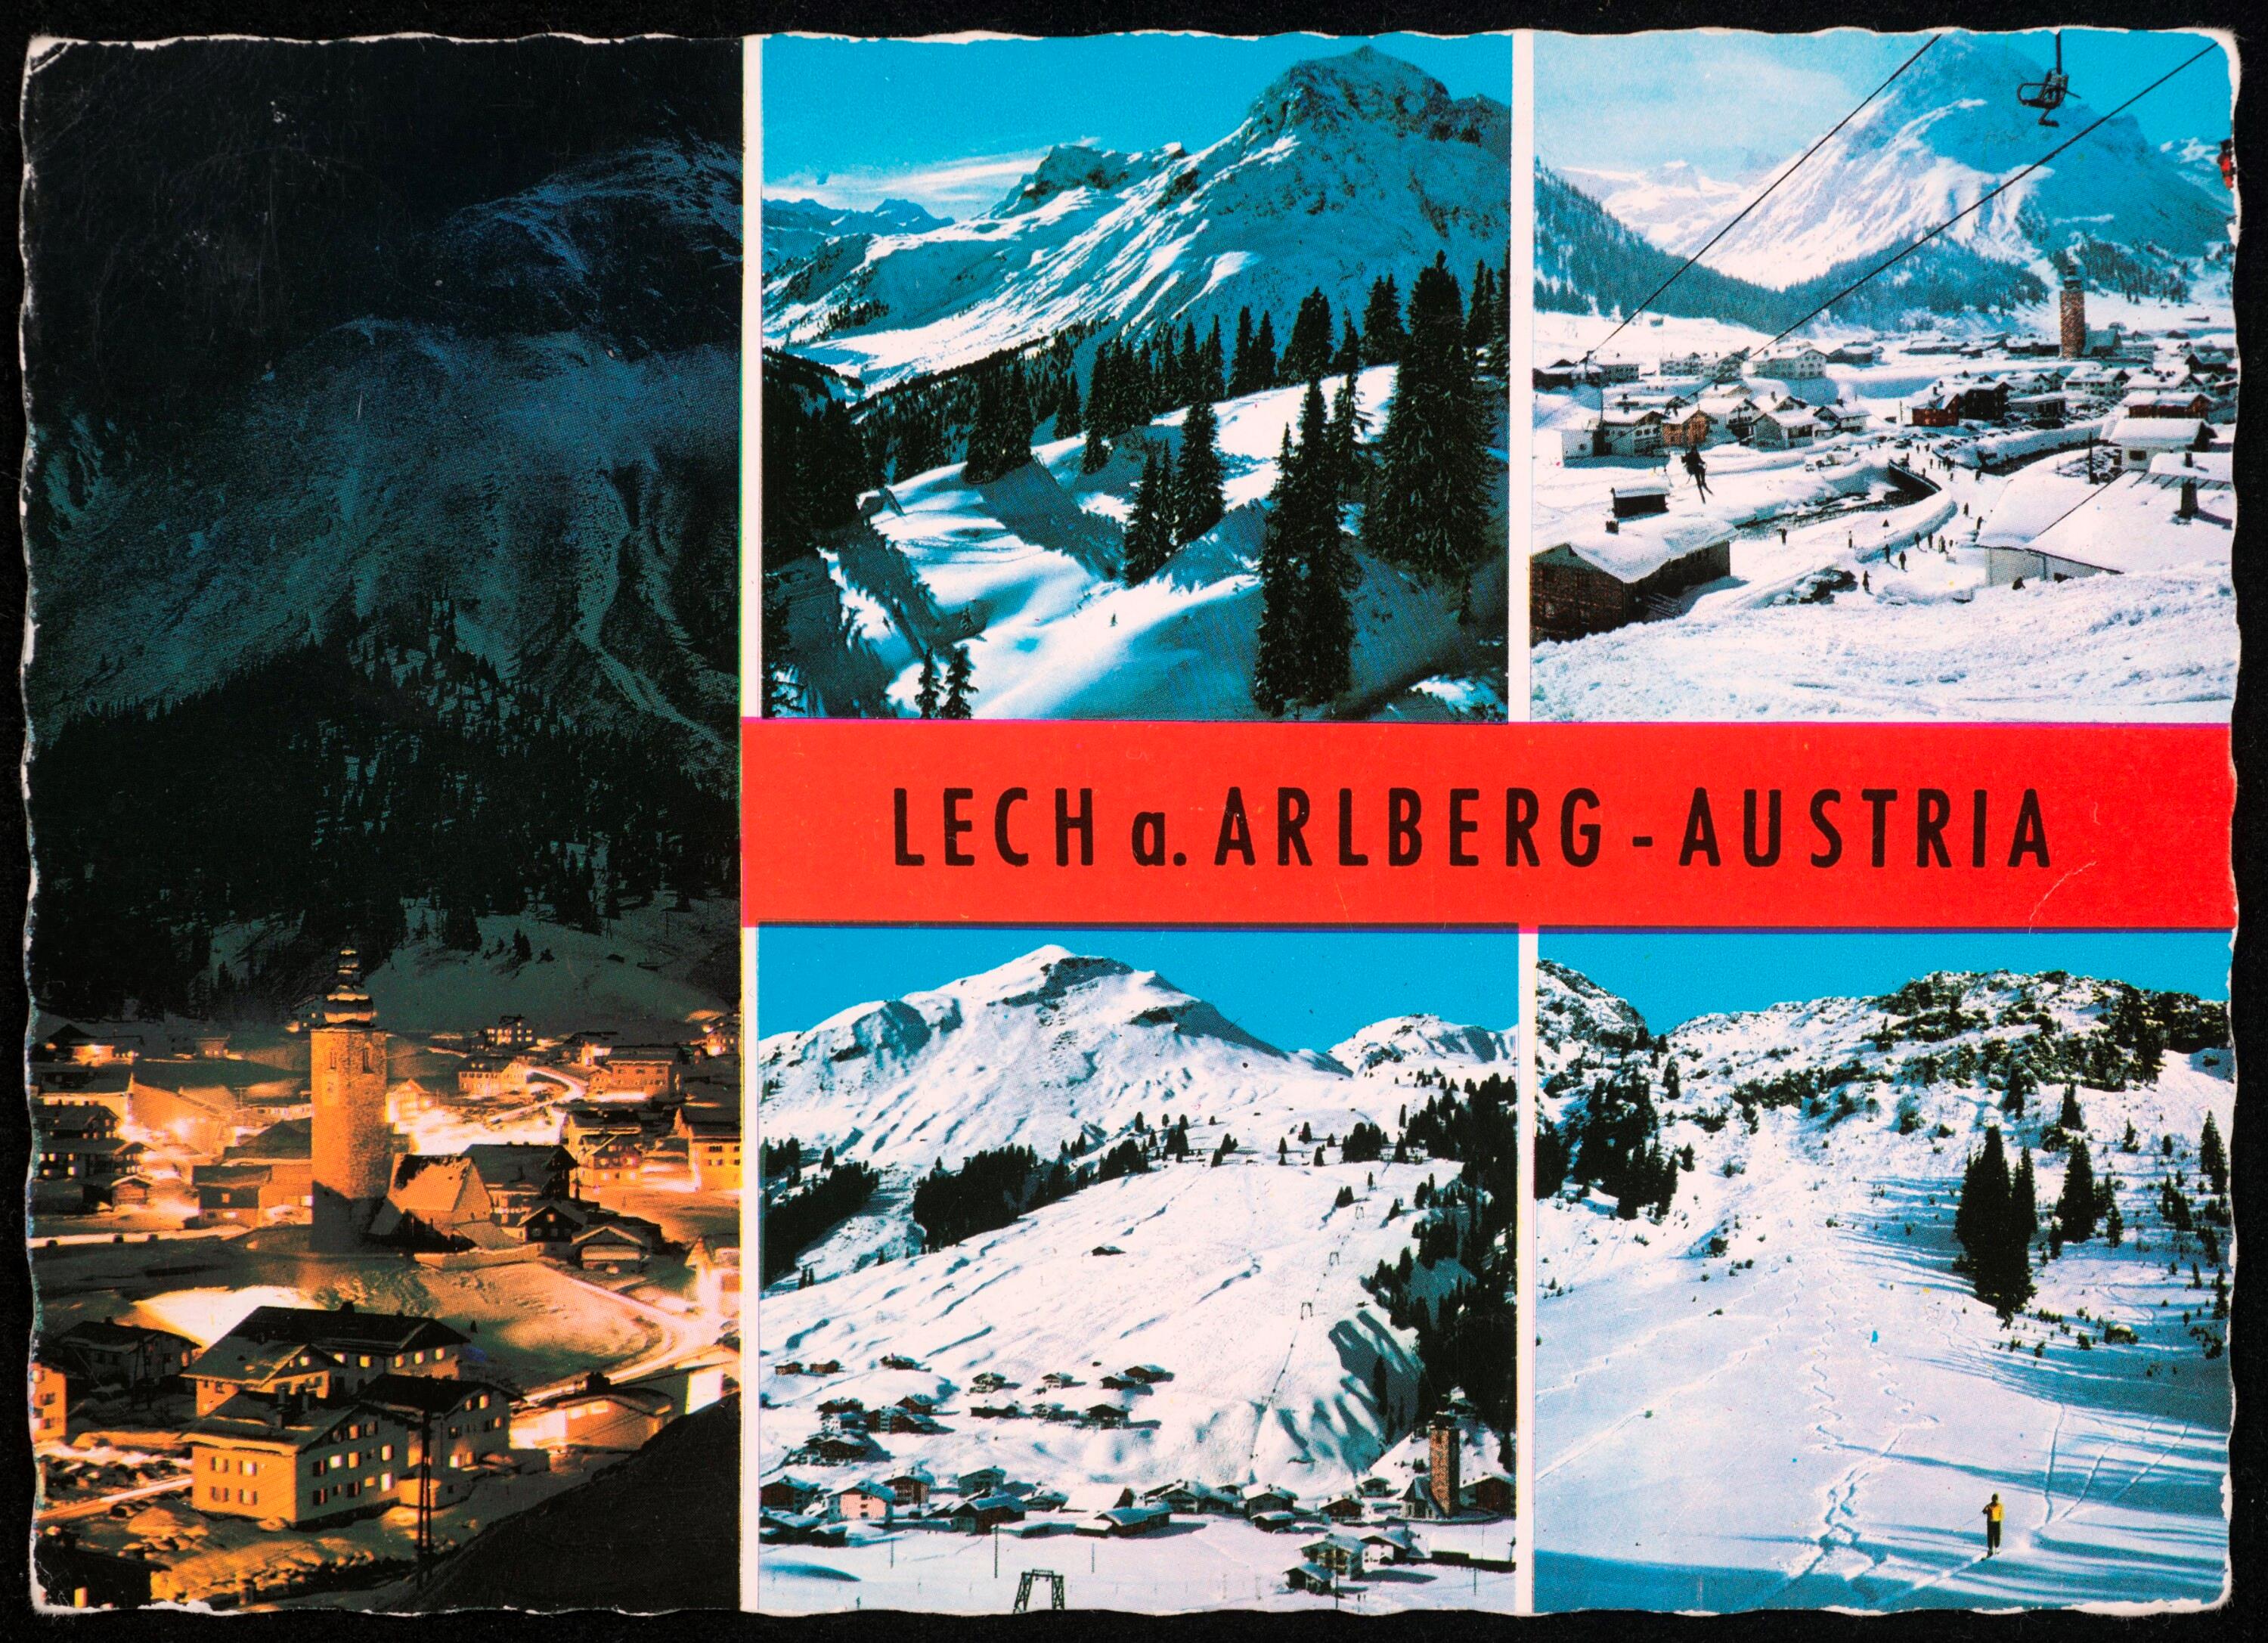 Lech a. Arlberg - Austria></div>


    <hr>
    <div class=